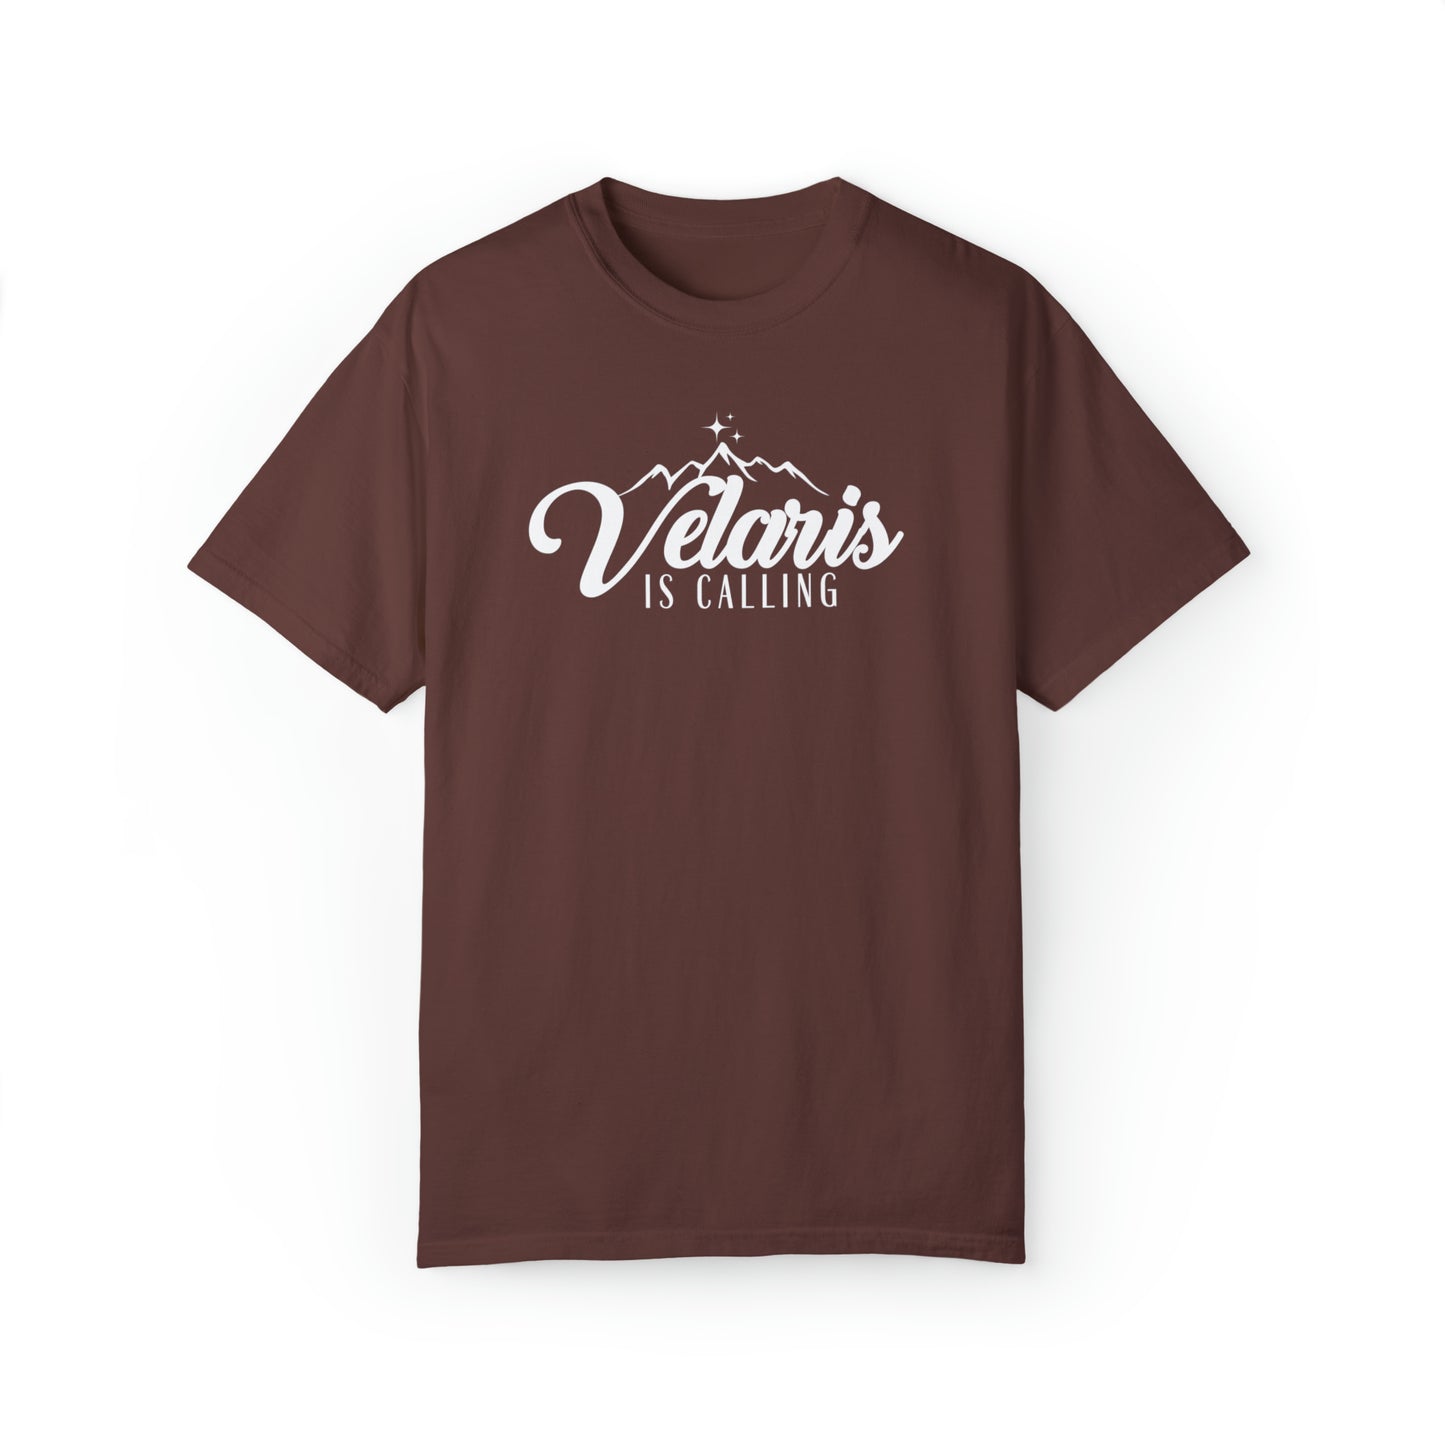 ACOTAR Bookish Tee - Velaris Comfort Colors Bookish Shirt